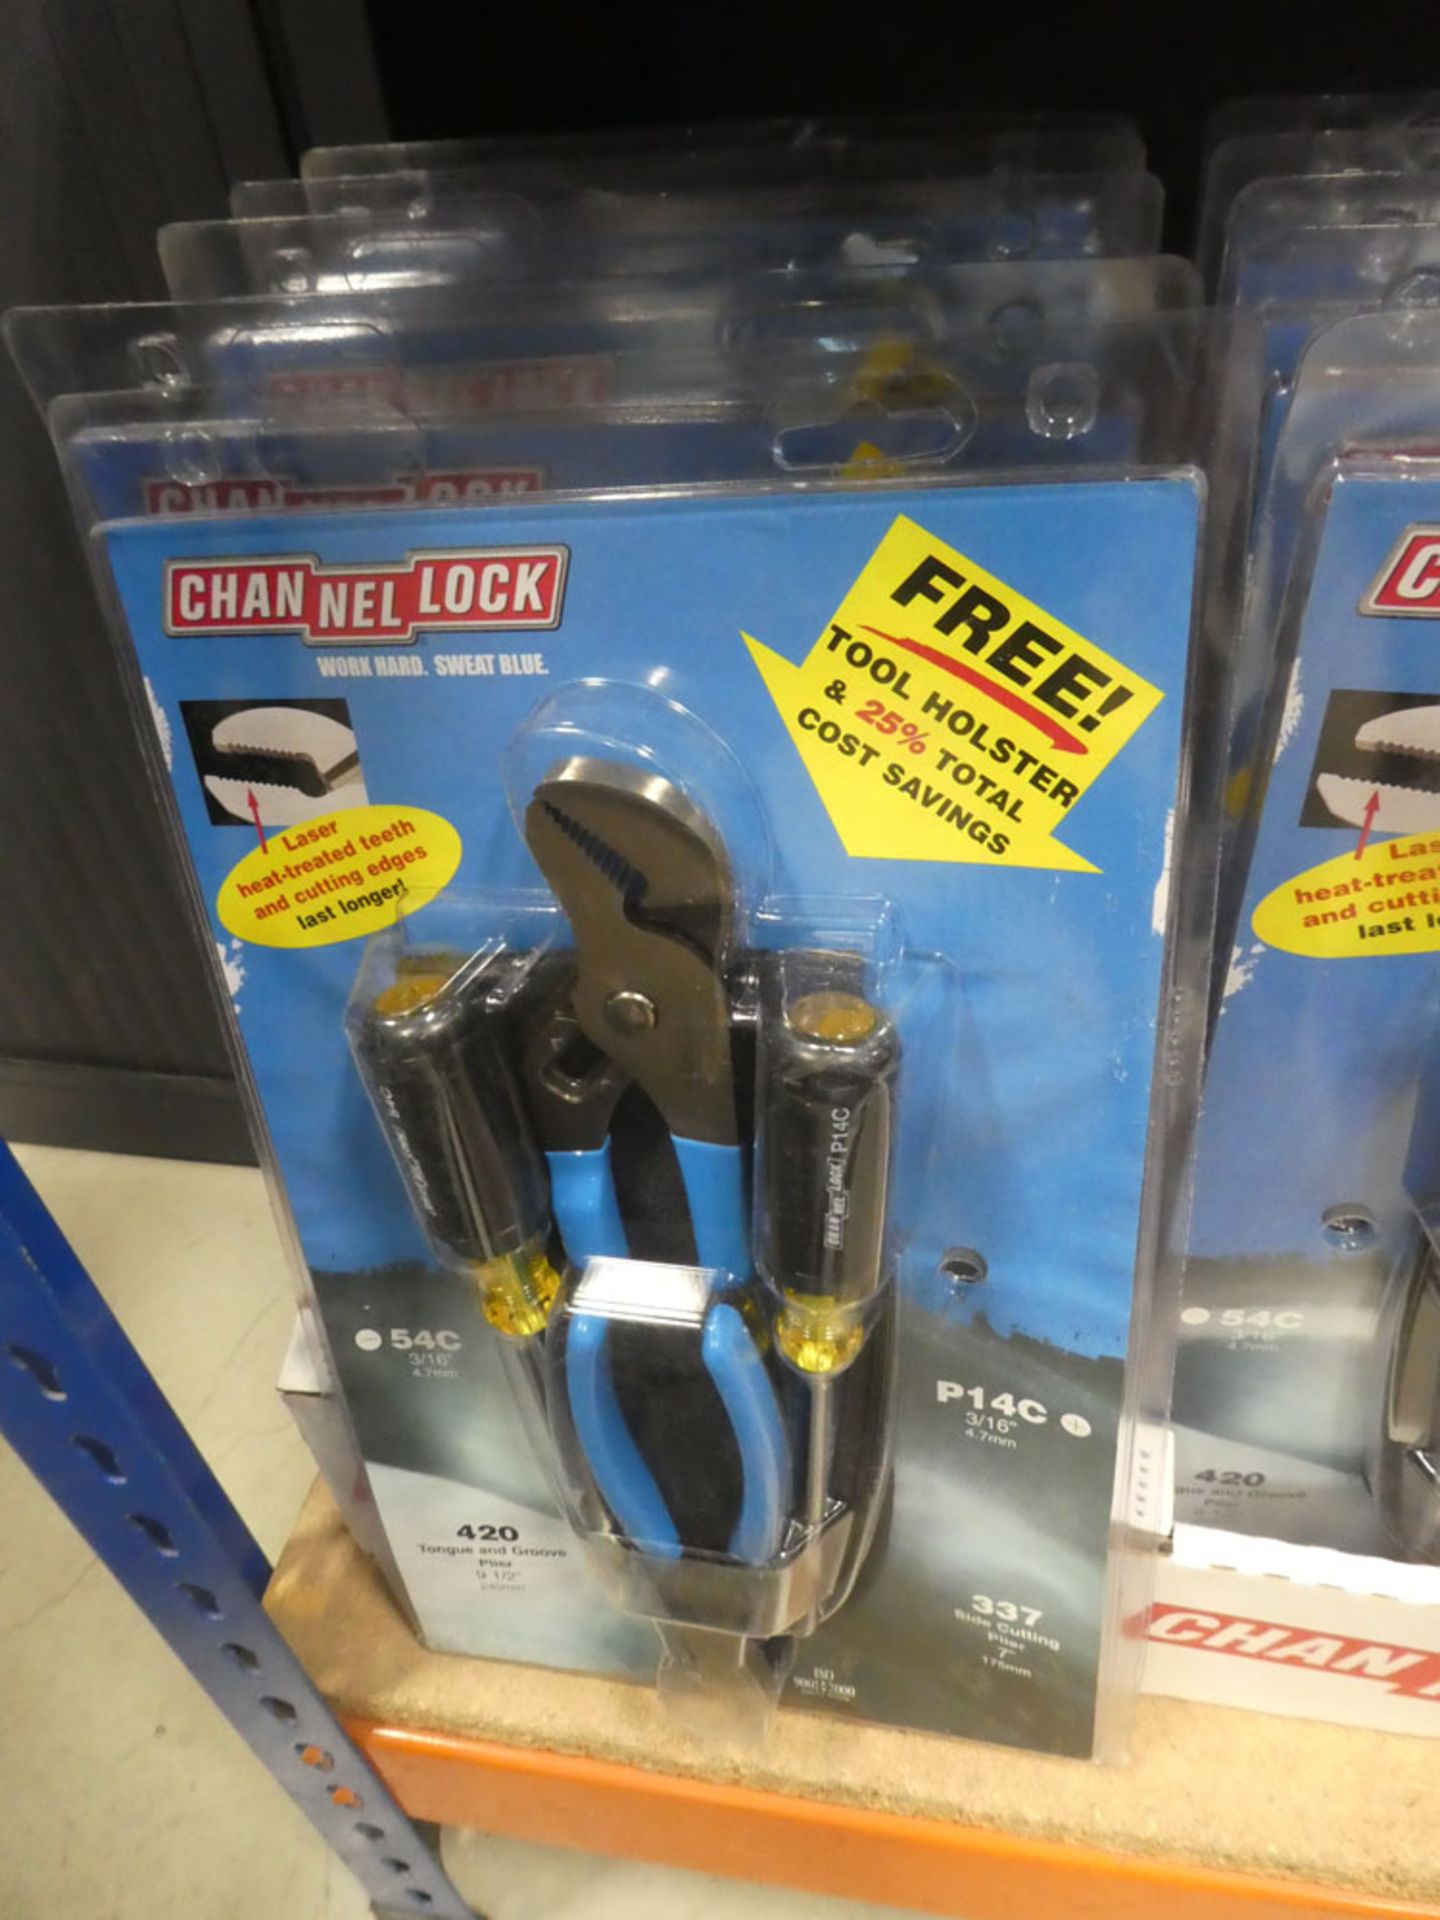 5 Channel lock mini toolkits